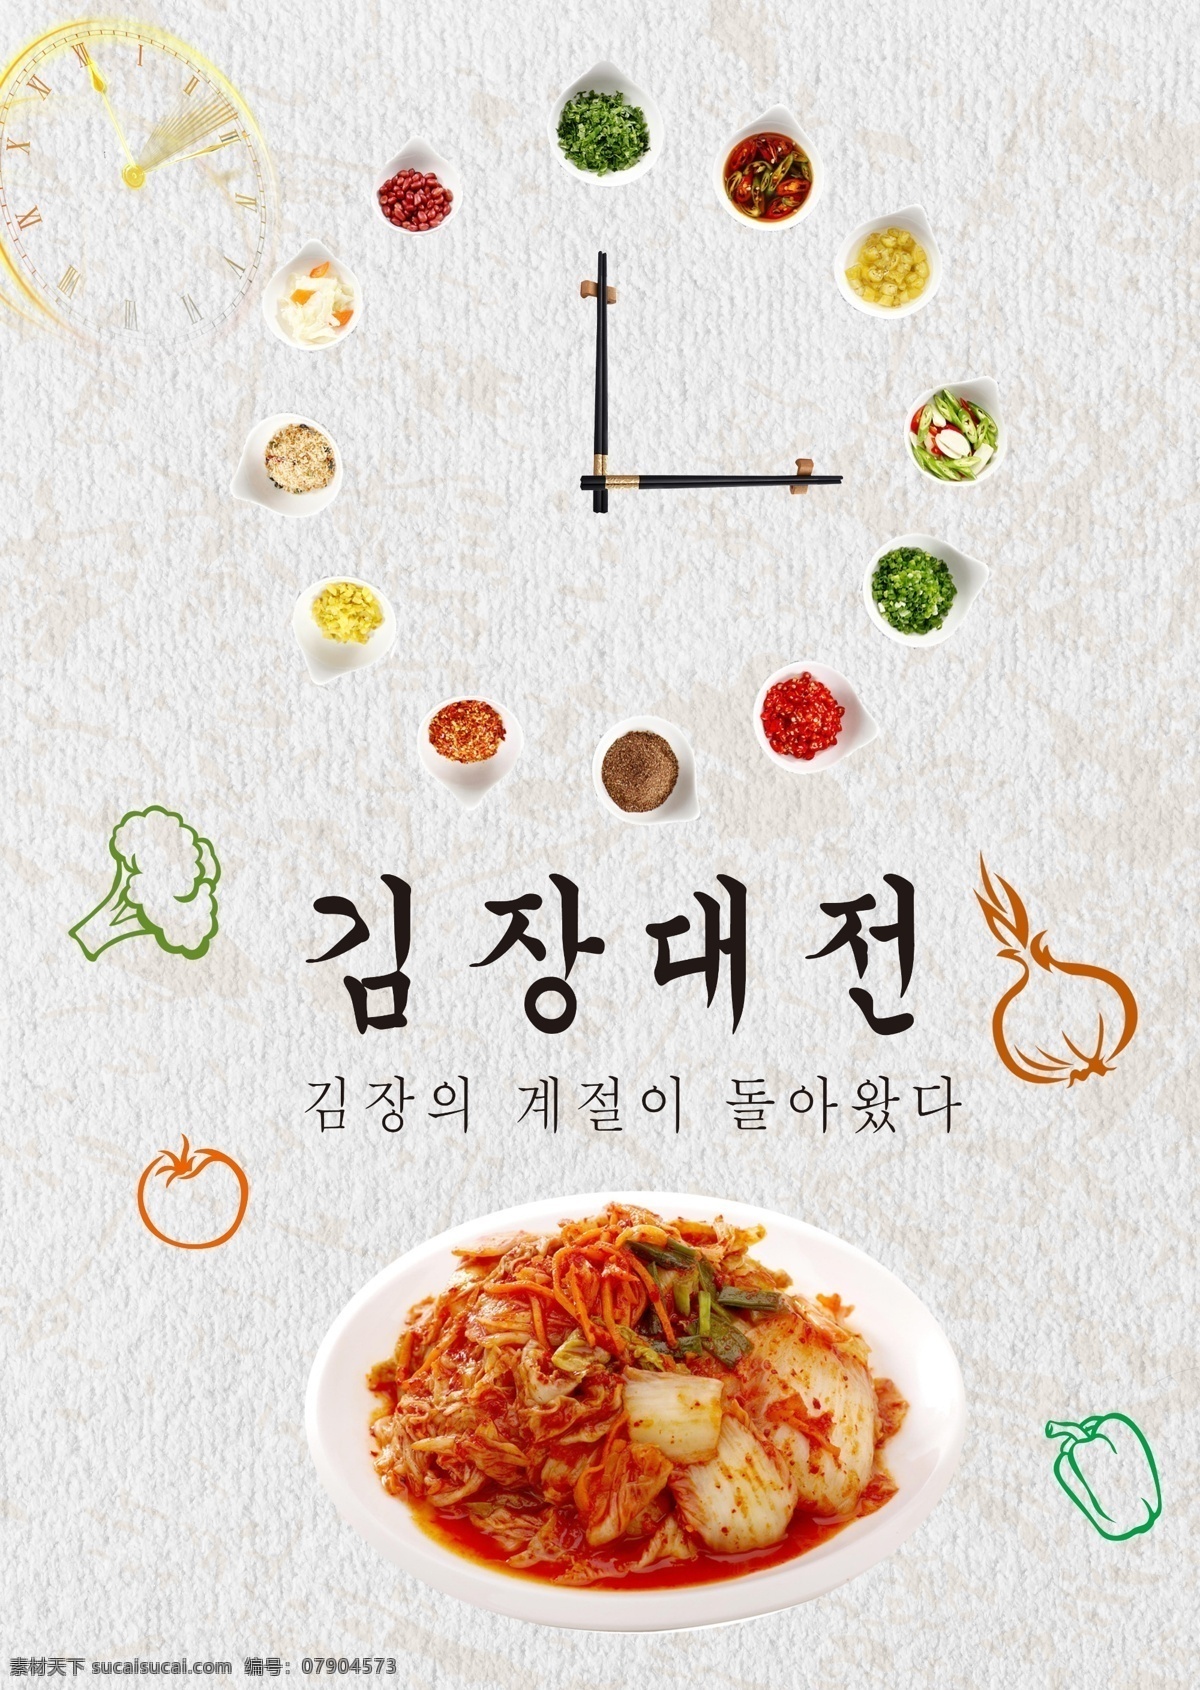 时尚 简约 韩国 泡菜 节 节日 海报 韩语 手表 大蒜 灰色 食物 圆